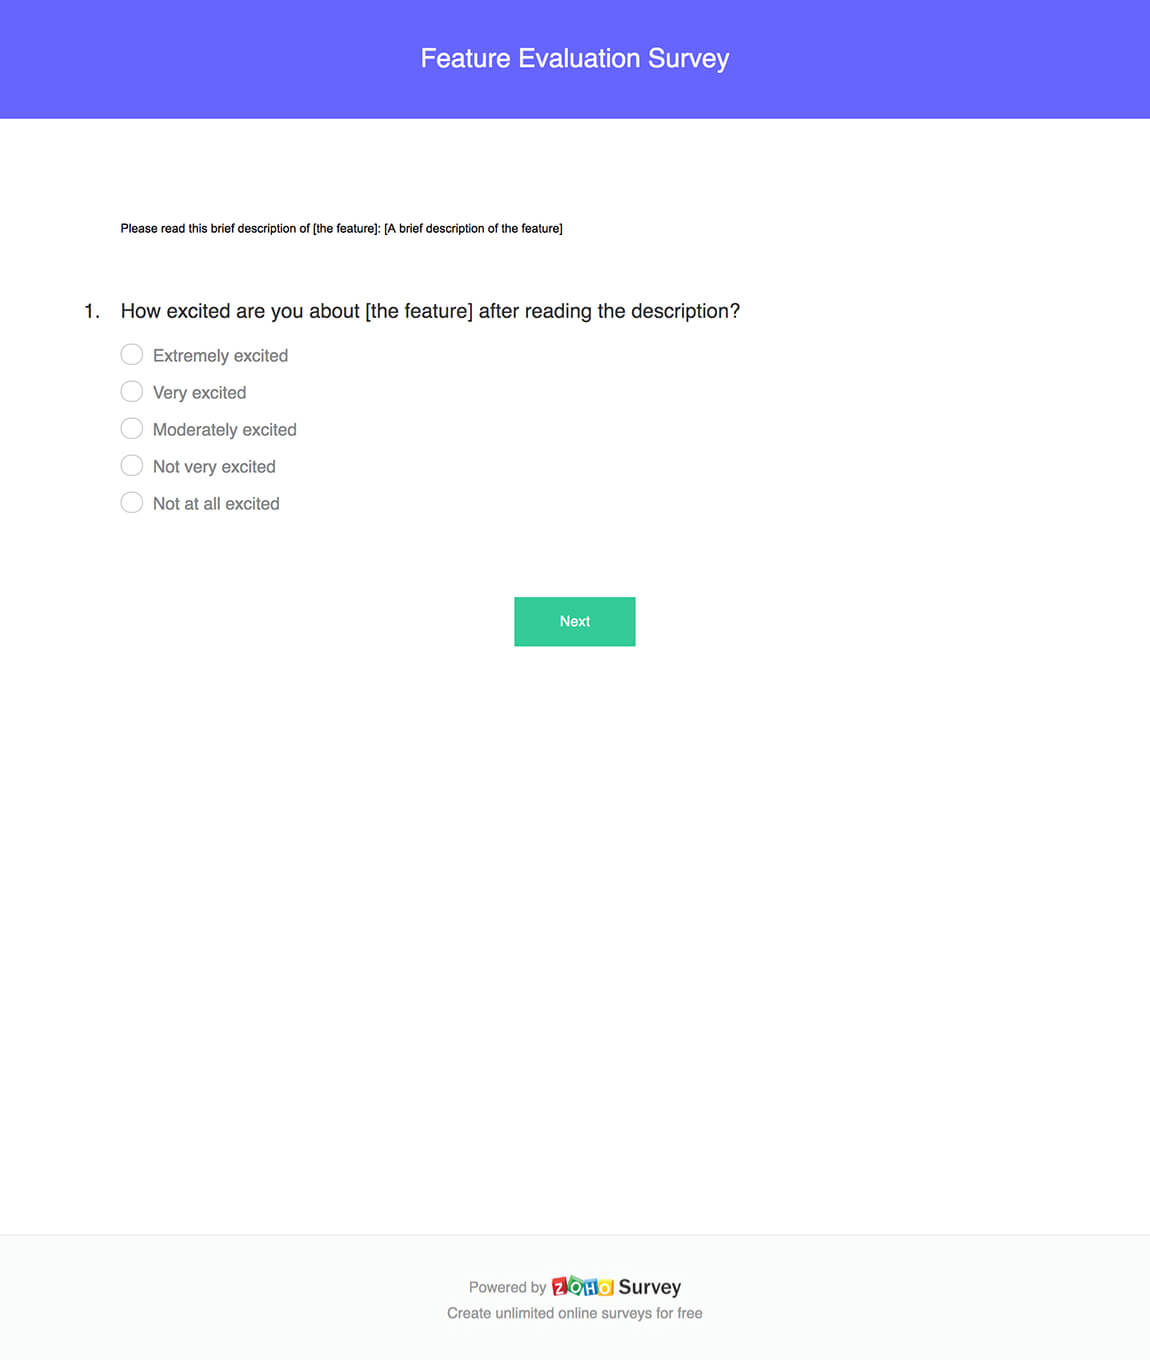 Feature evaluation survey questionnaire template